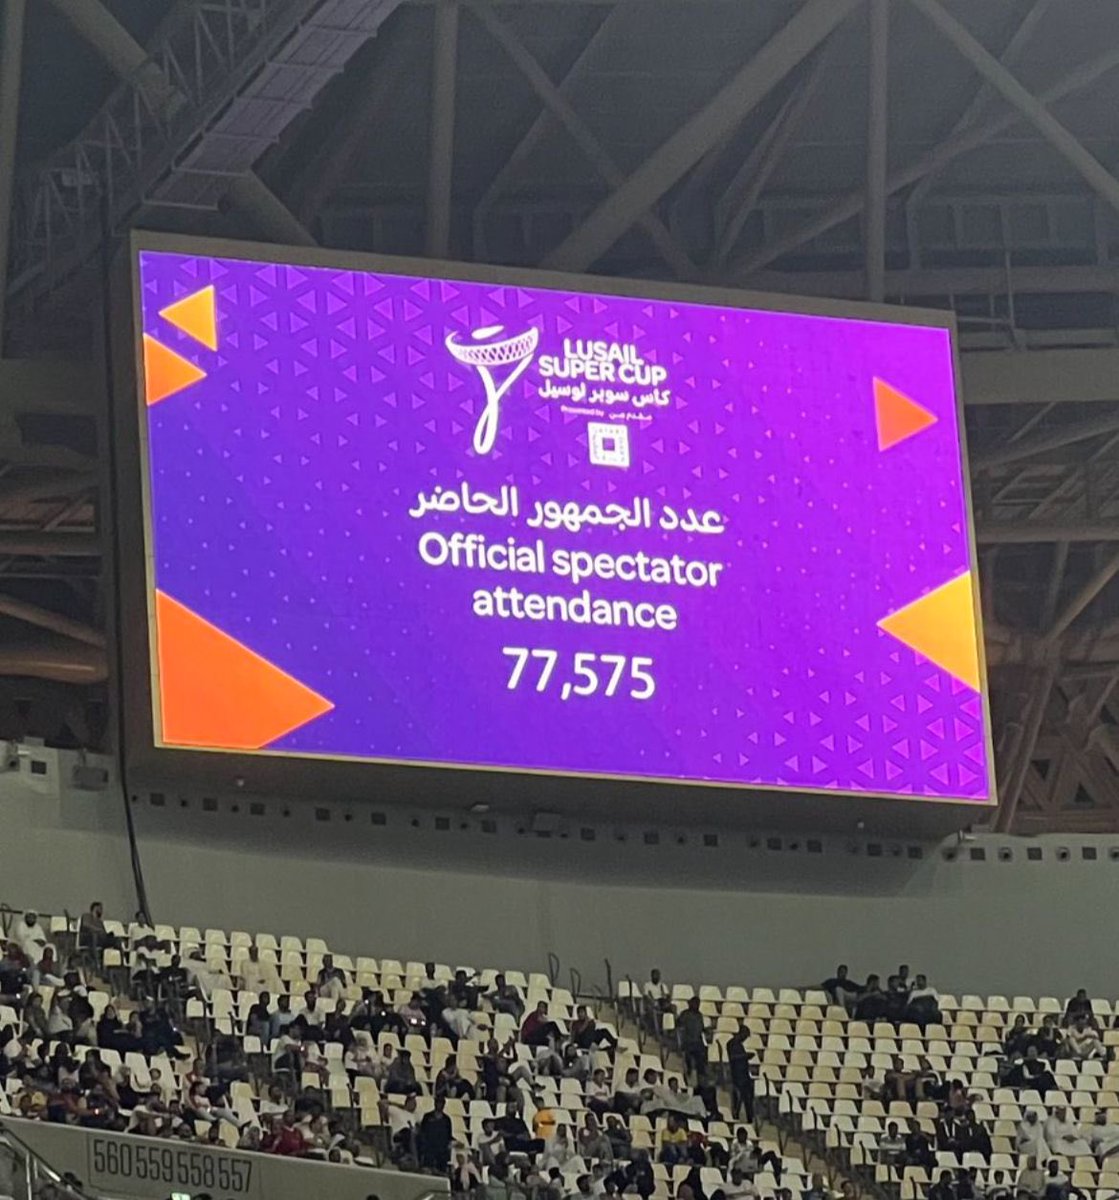 أعلى نسبة حضور في تاريخ ملاعب قطر 🇶🇦 
77 الف متفرج  في #استاد_لوسيل ، 
#كأس_سوبر_لوسيل ،
#الهلال_الزمالك .. #الزمالك_الهلال .